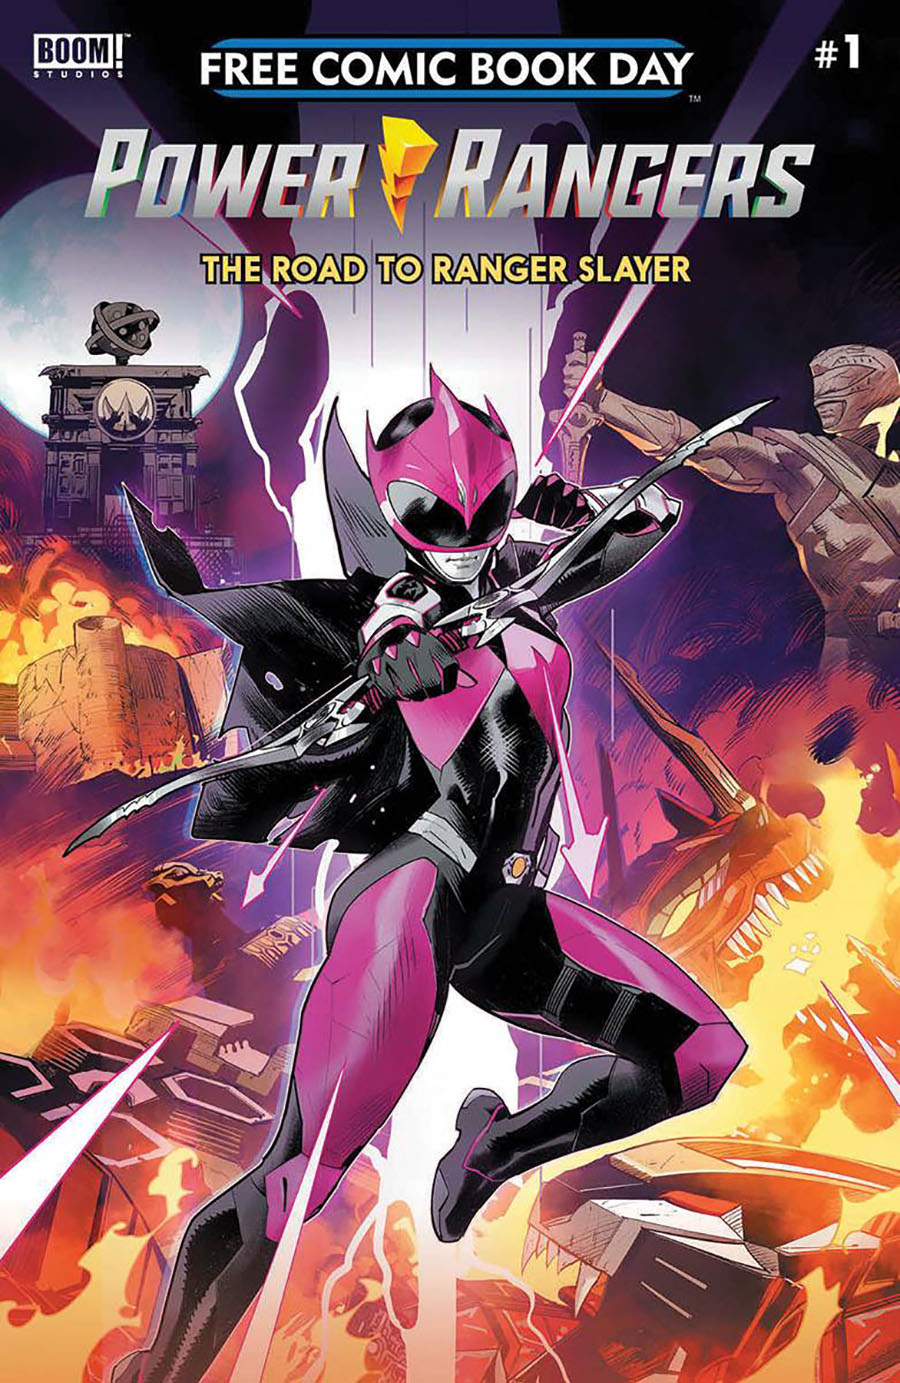 Power Rangers The Road To Ranger Slayer #1 FCBD 2020